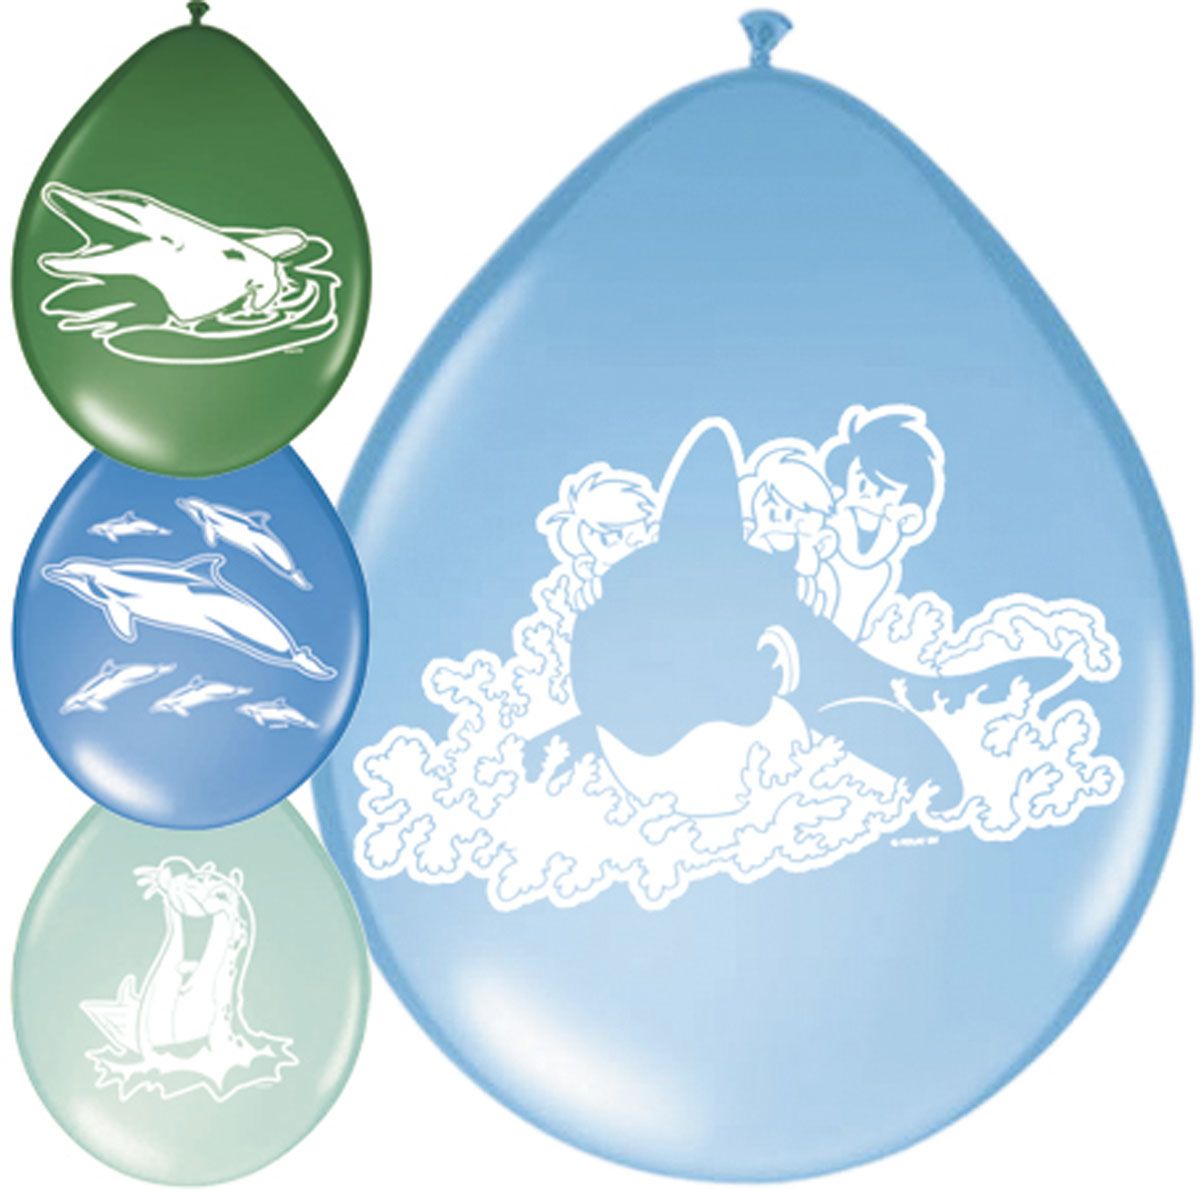 Blauw groene ballonnen met dolfijnen